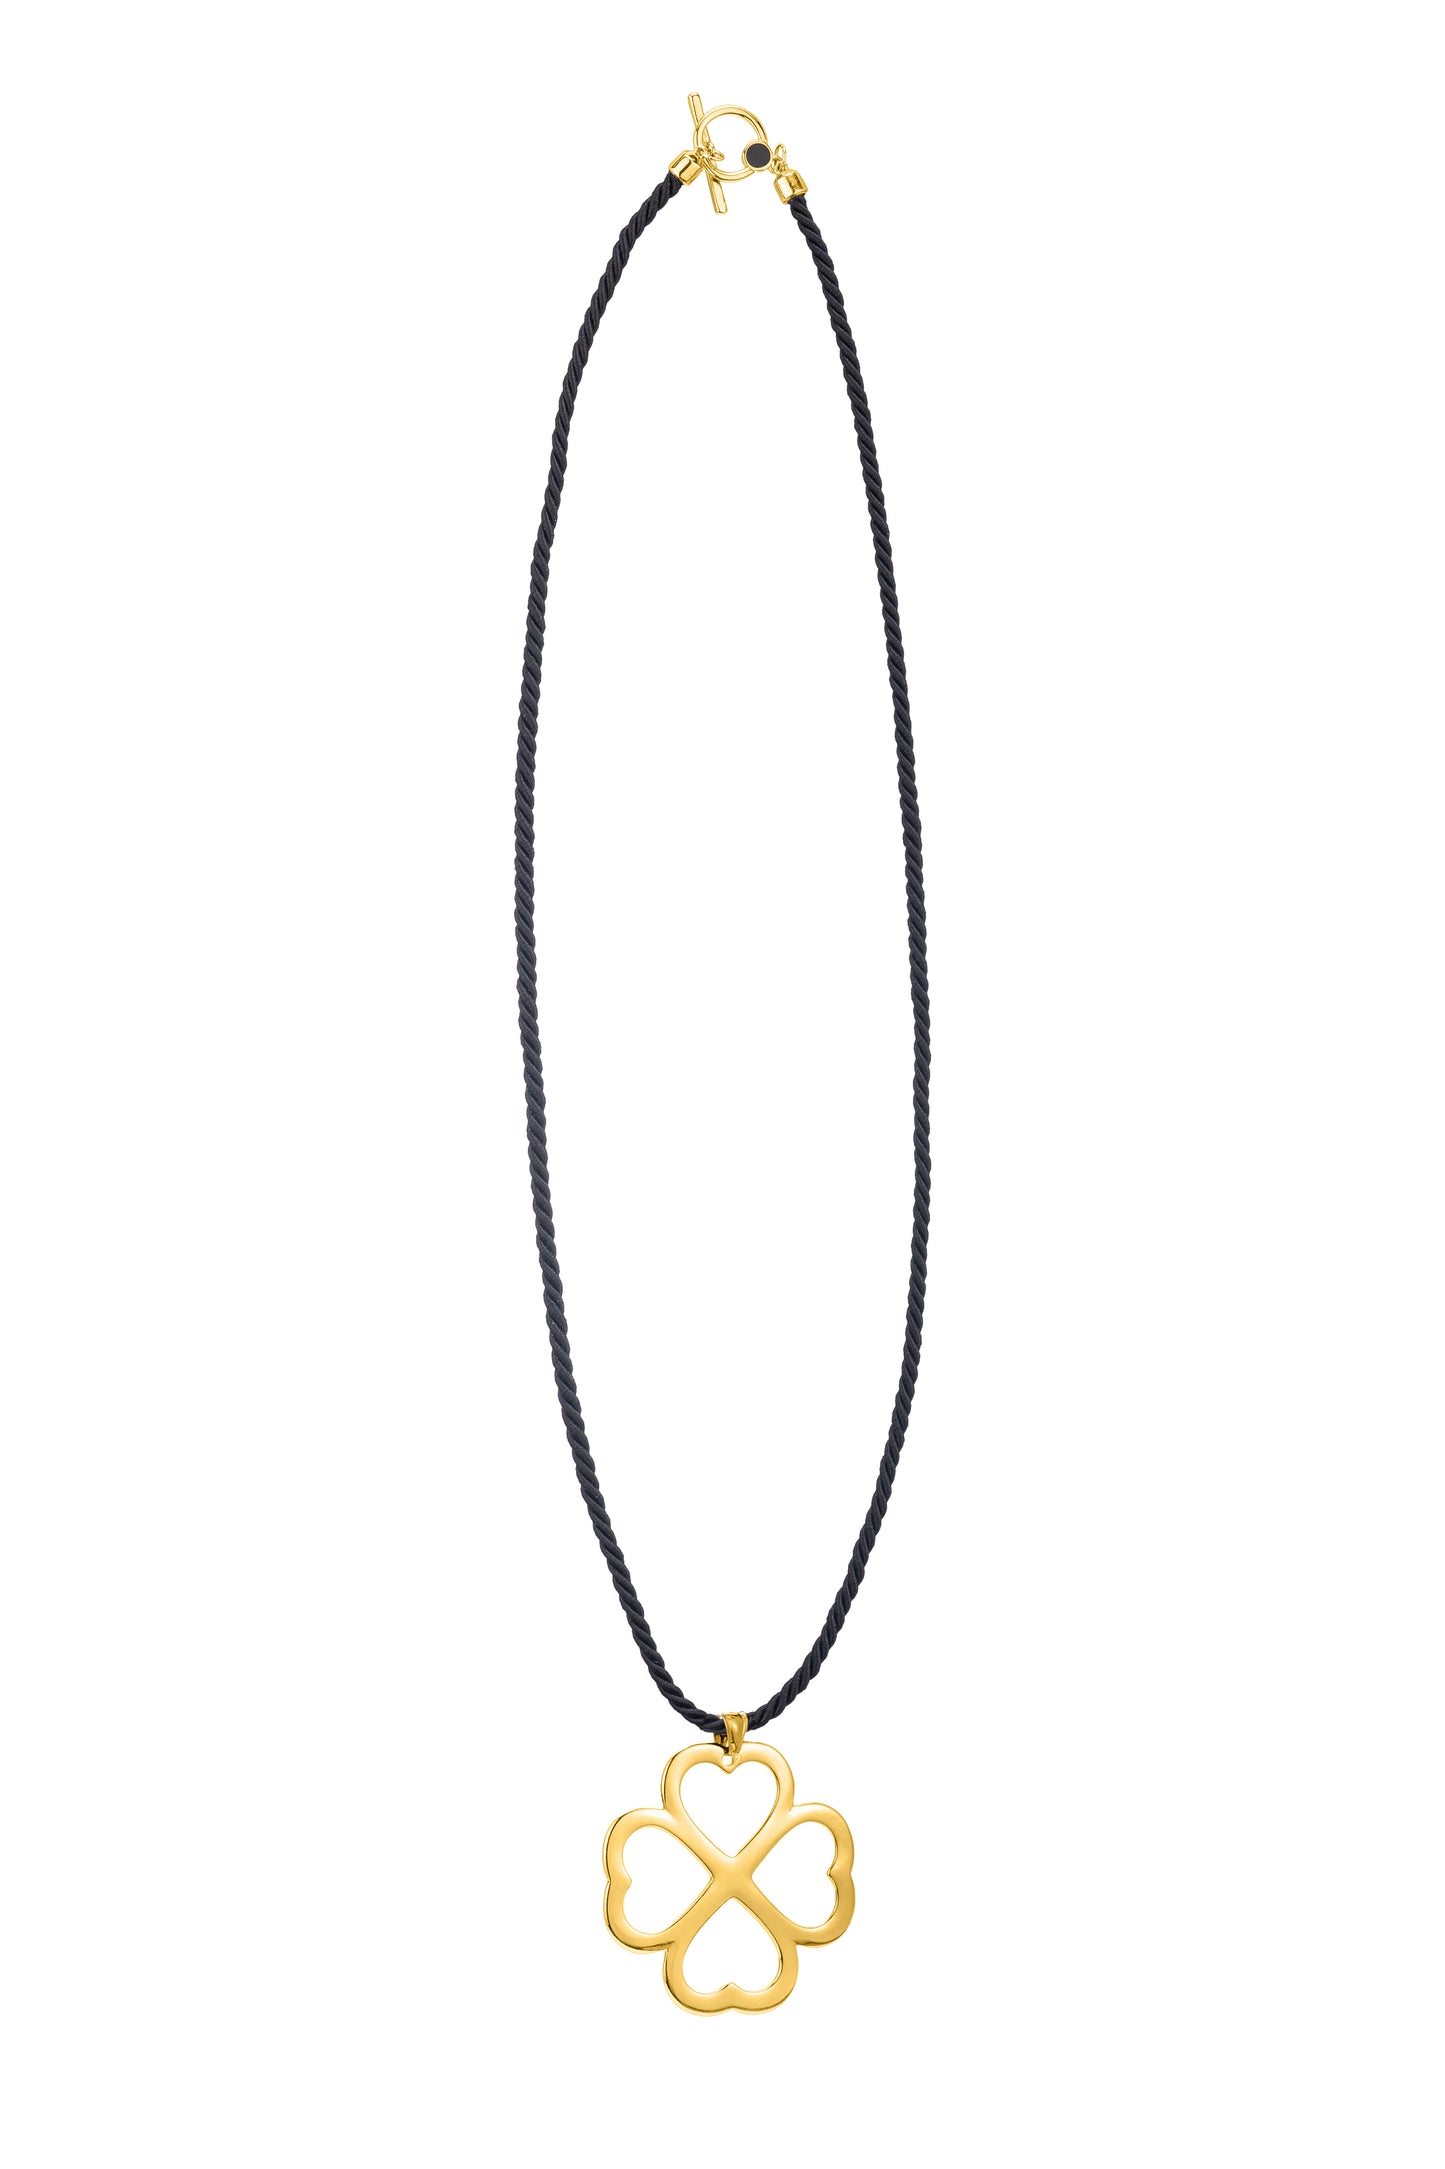 St. Patrick's Clover Necklace Pendant